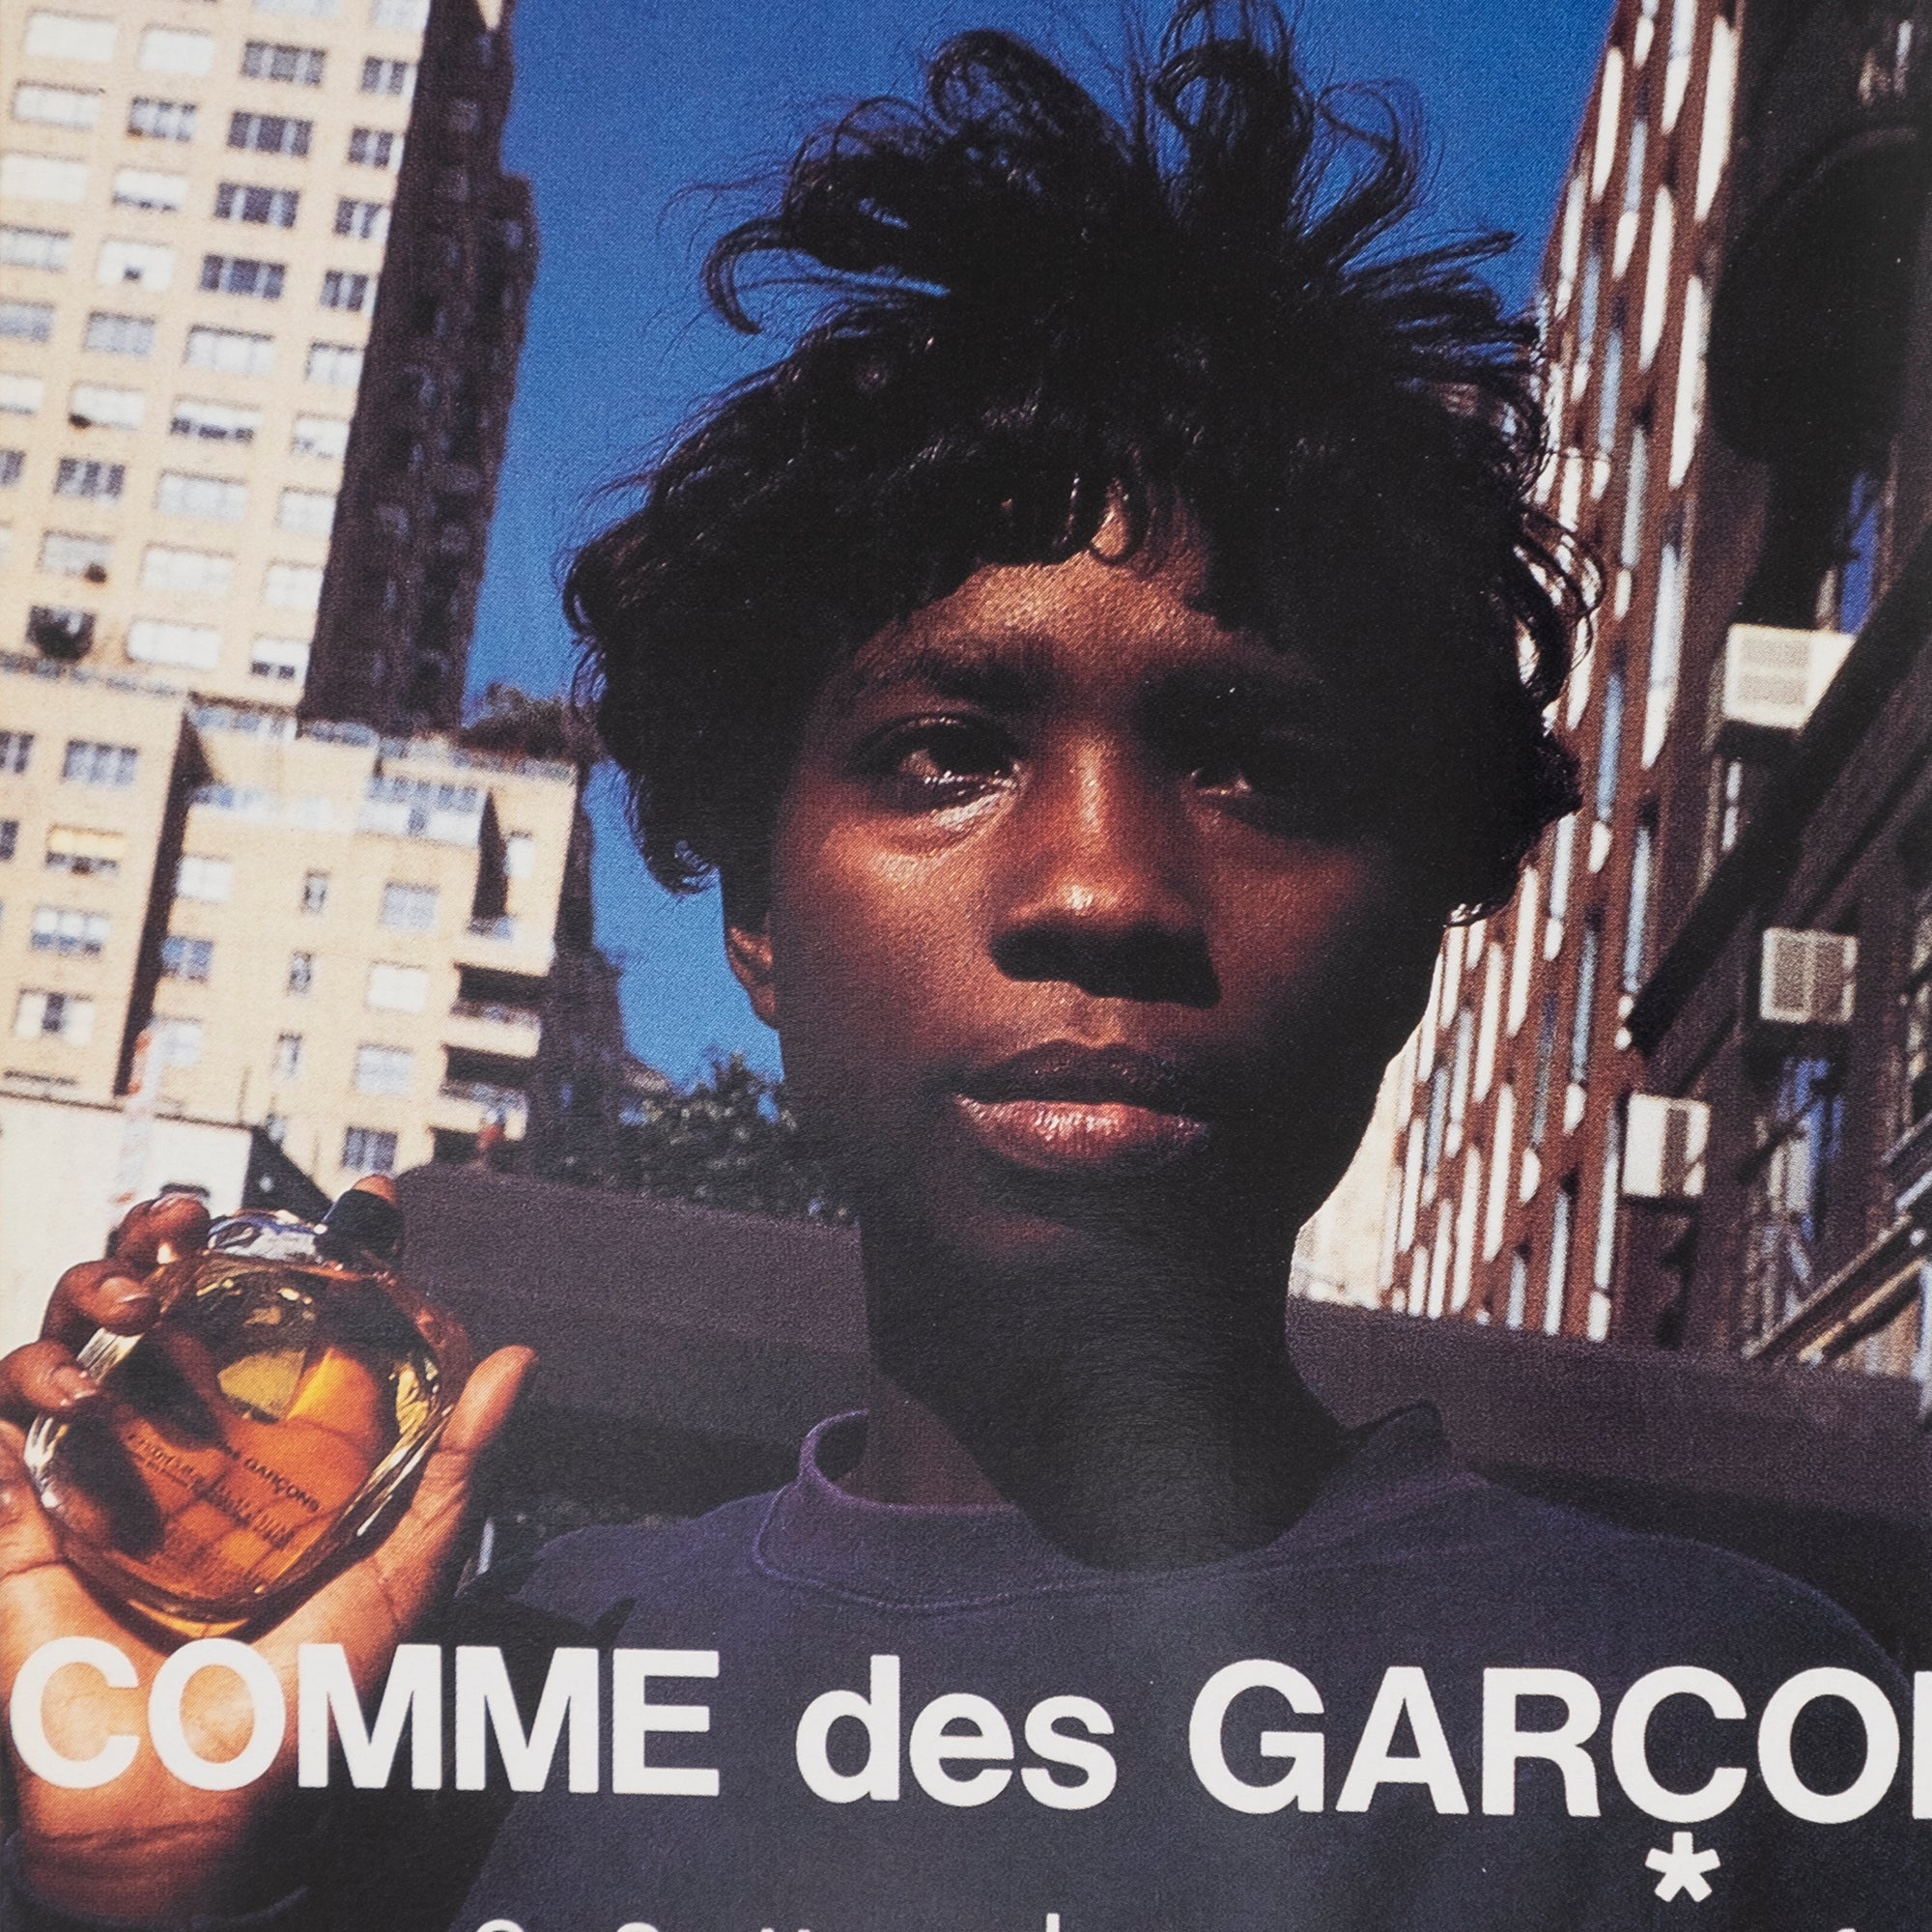 France Grand — COMME des GARÇONS